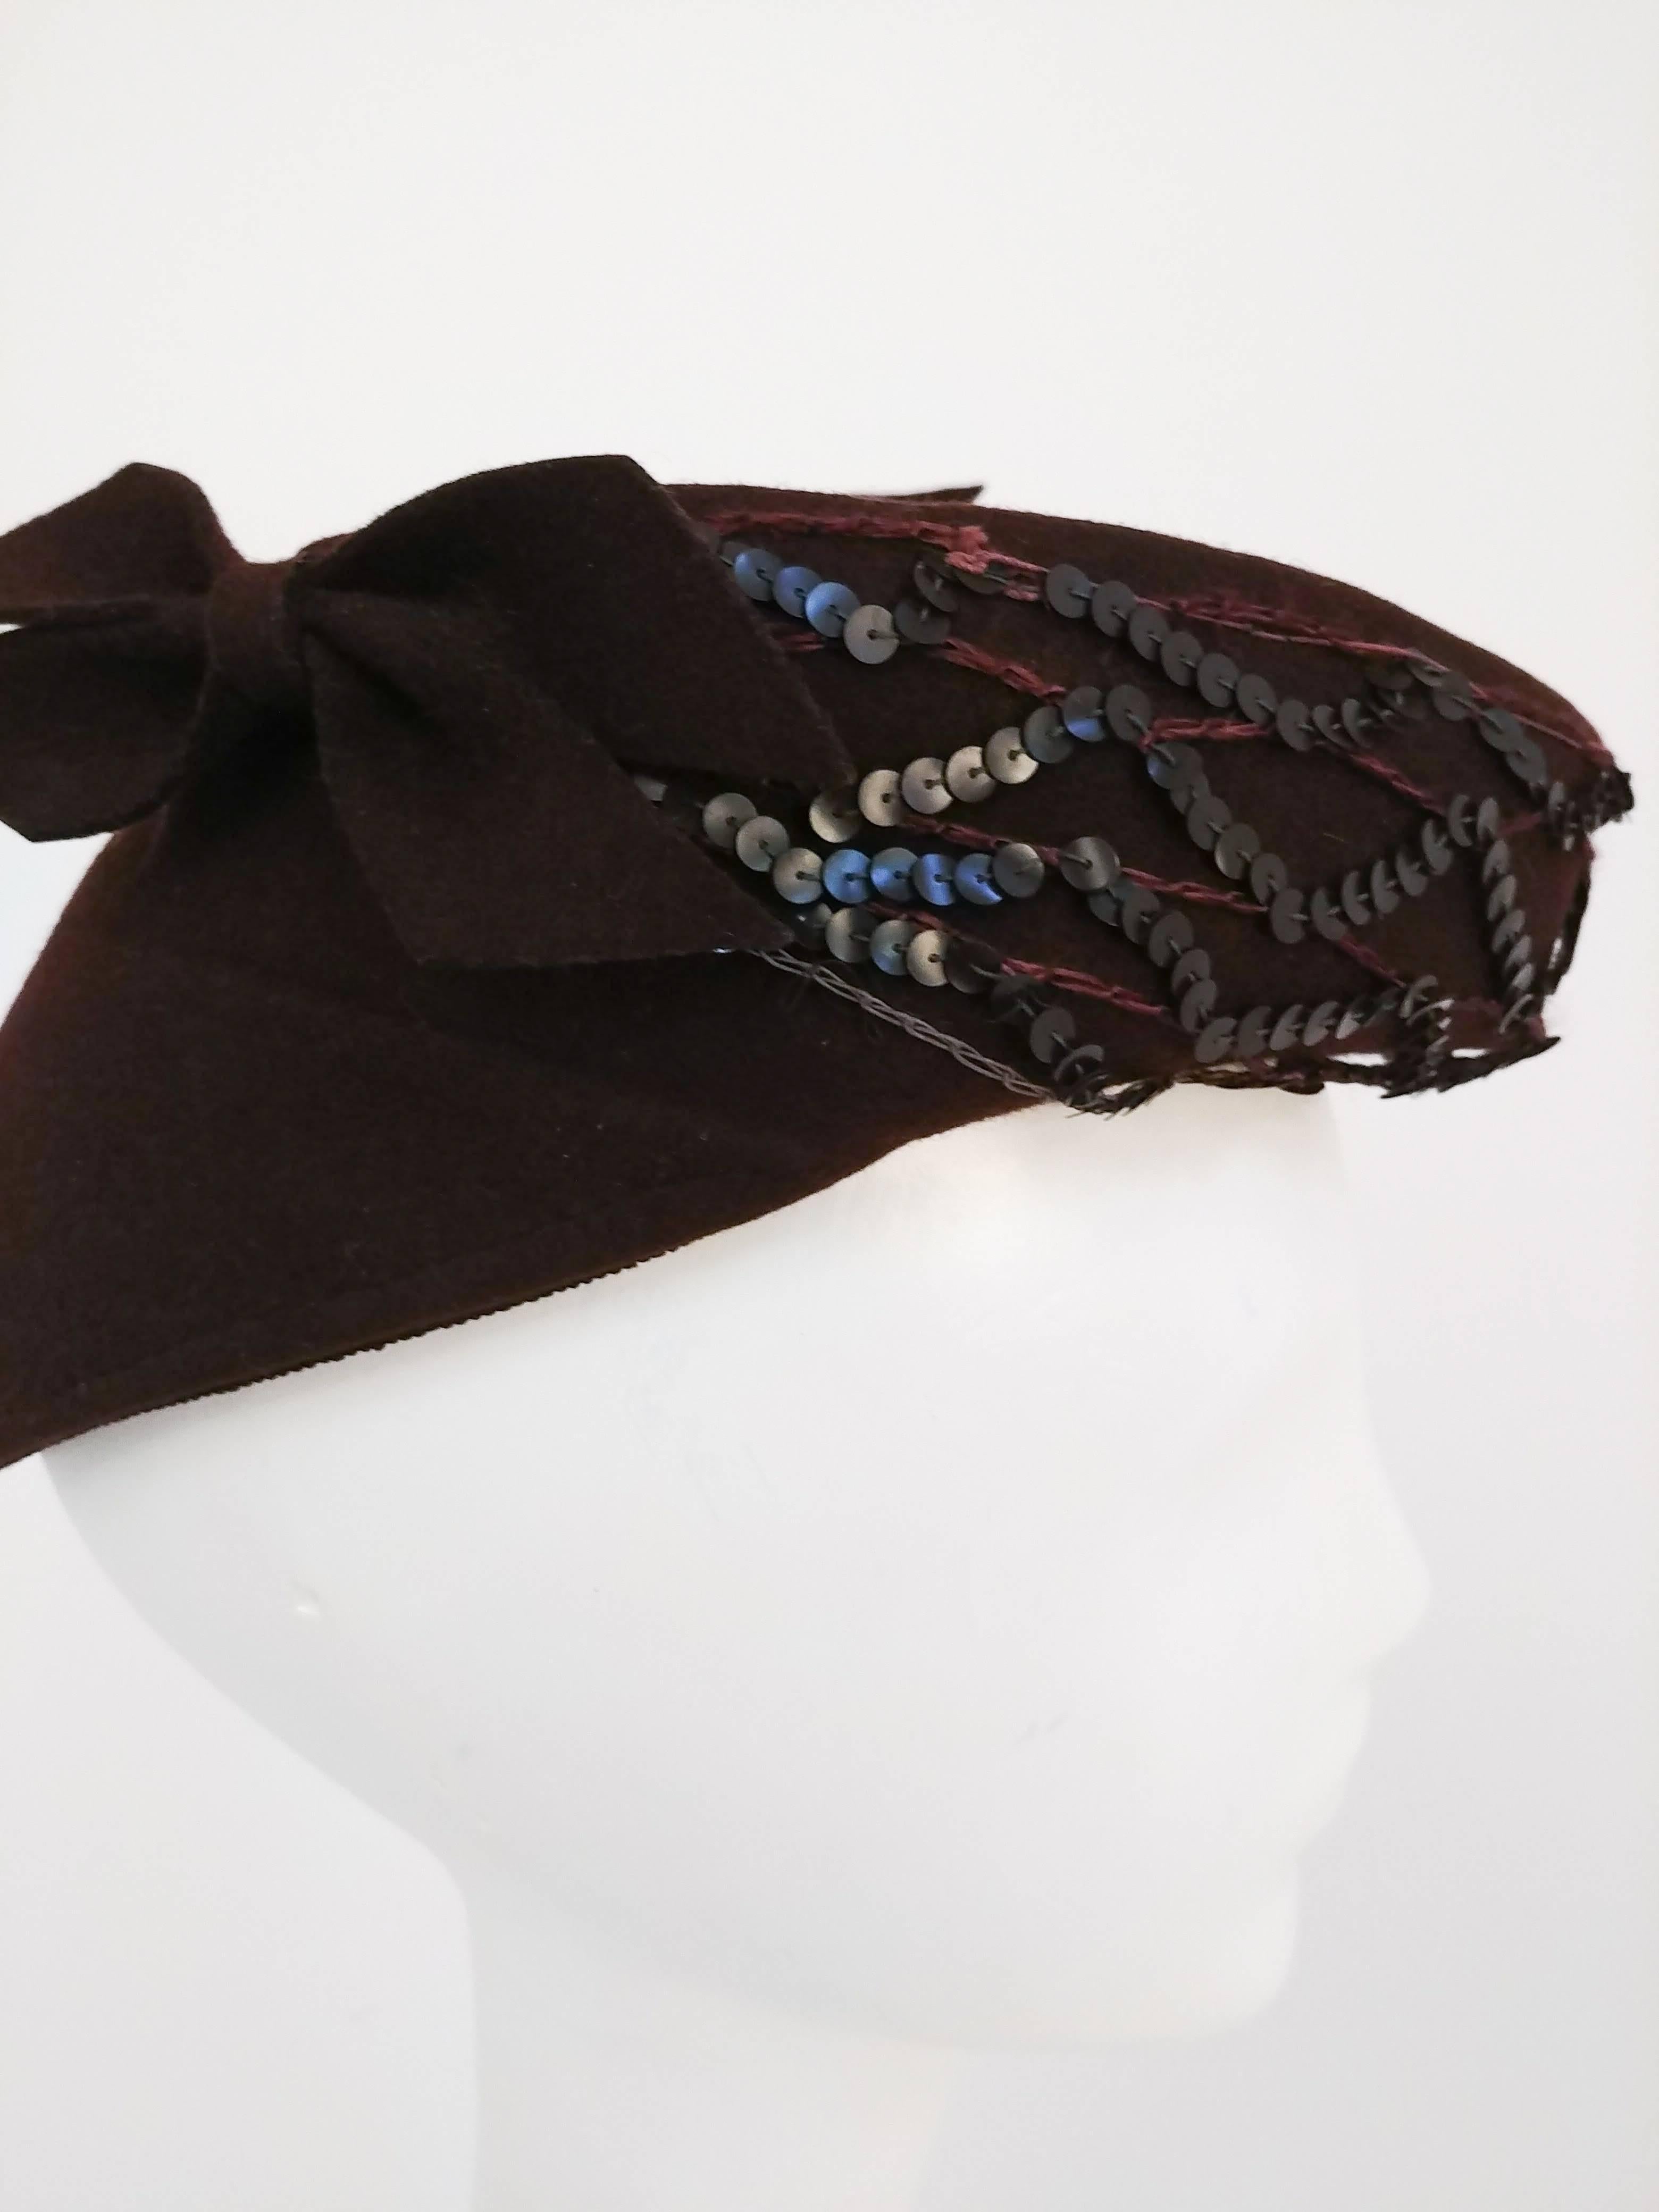 chapeau en feutre de laine marron des années 1940, avec paillettes et nœuds. Laine marron avec décoration à paillettes et nœuds en feutre. 22 3/4 de circonférence. 